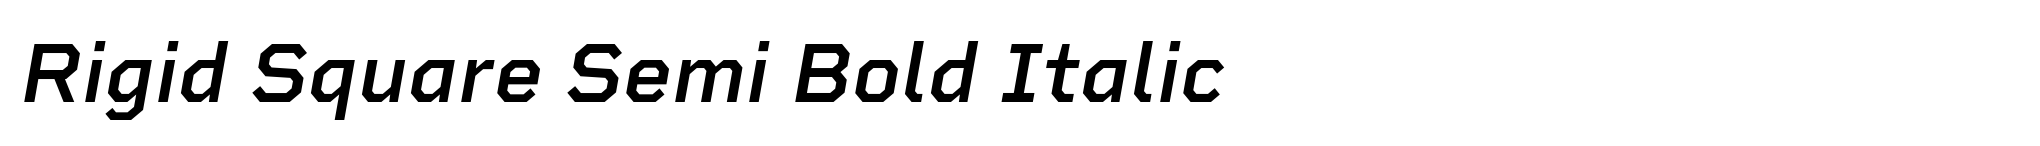 Rigid Square Semi Bold Italic image